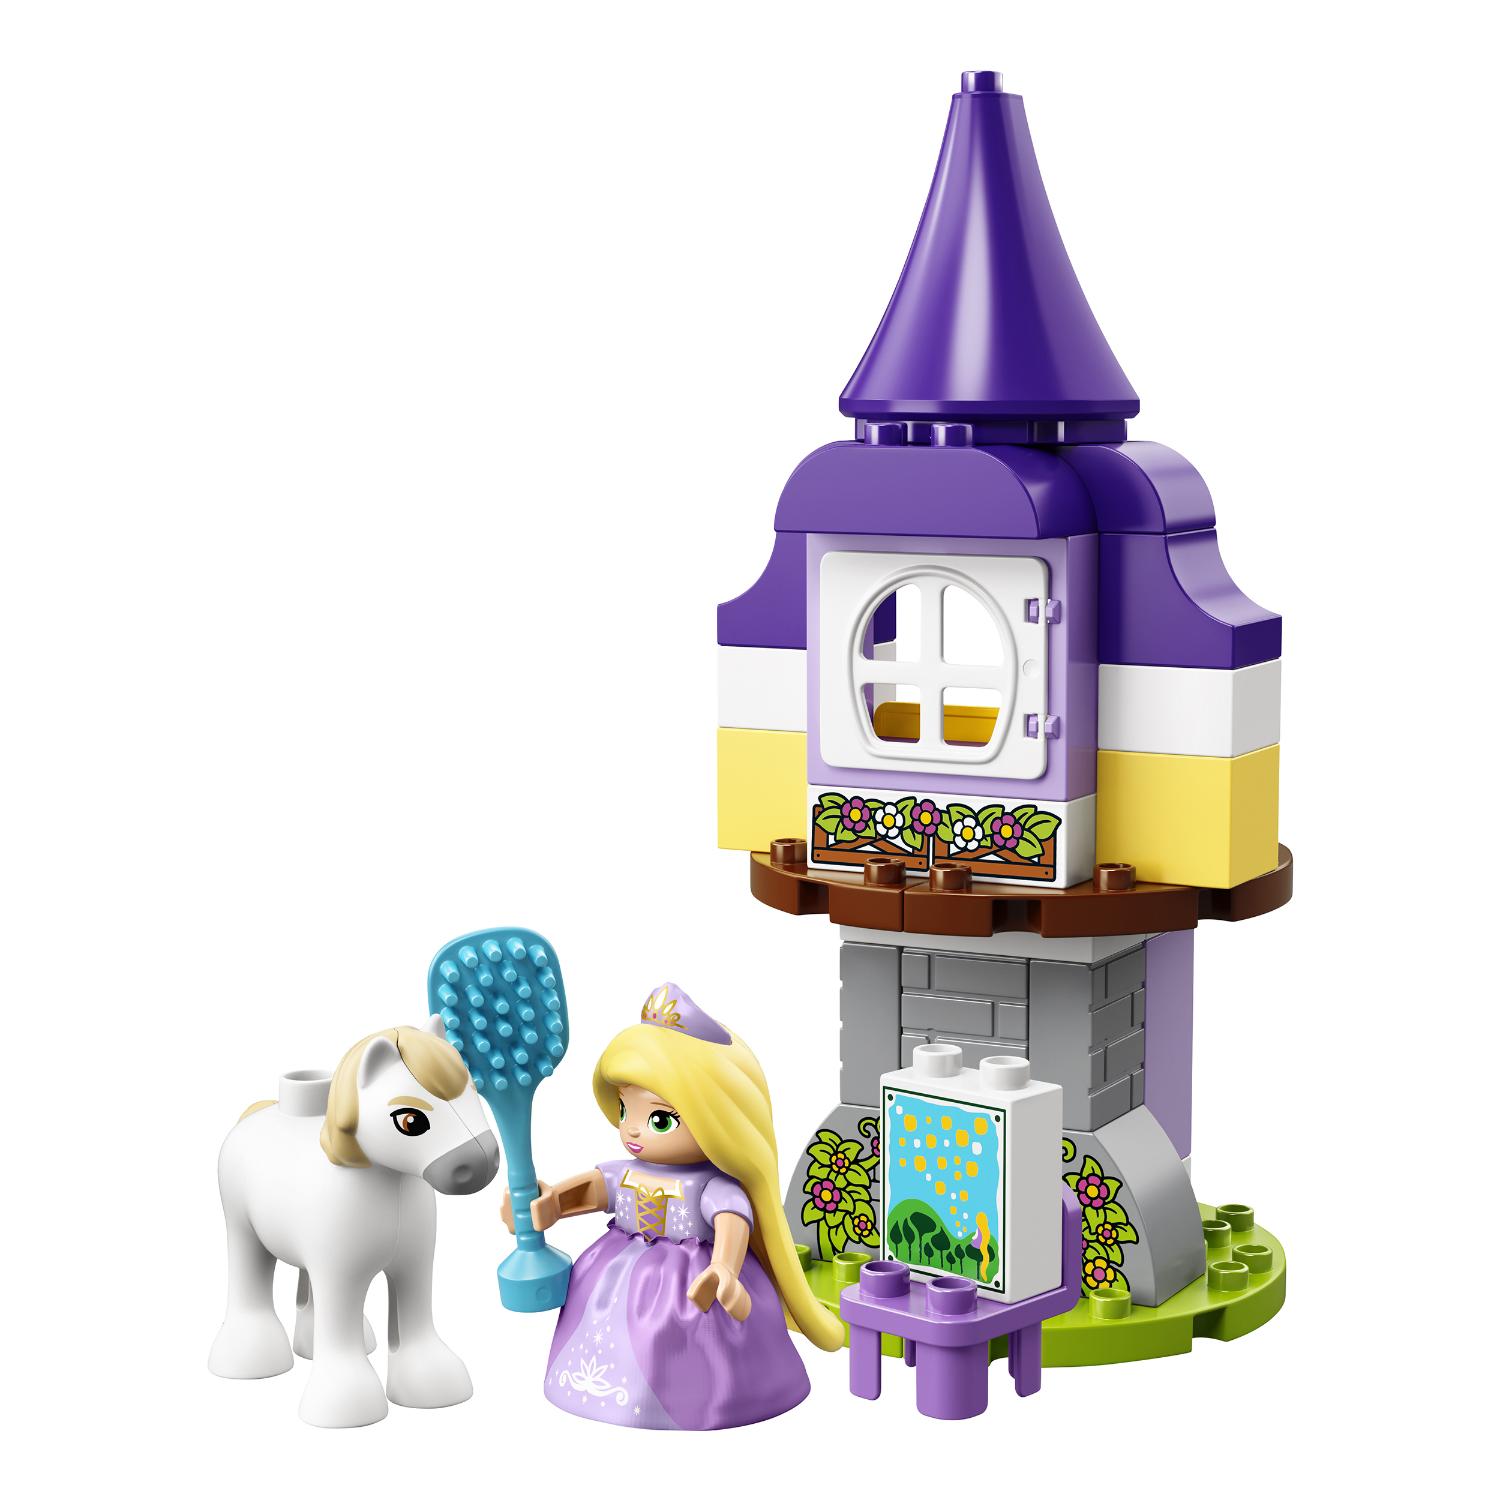 Конструктор Lego Duplo Princess - Башня Рапунцель  